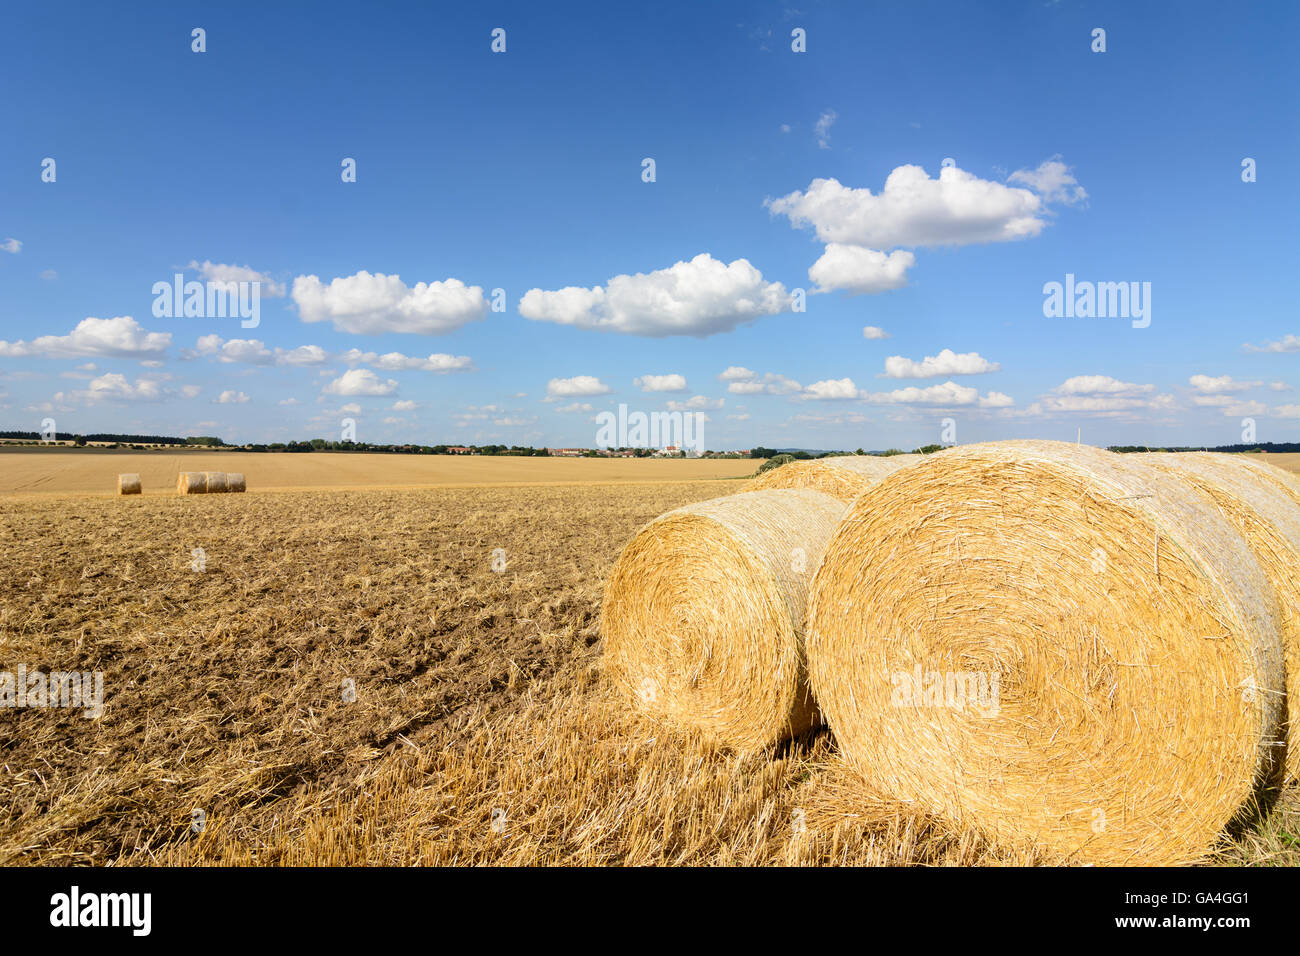 Les champs de céréales récoltées Drosendorf-Zissersdorf avec des bottes de paille Autriche Niederösterreich, Autriche Basse-autriche Banque D'Images